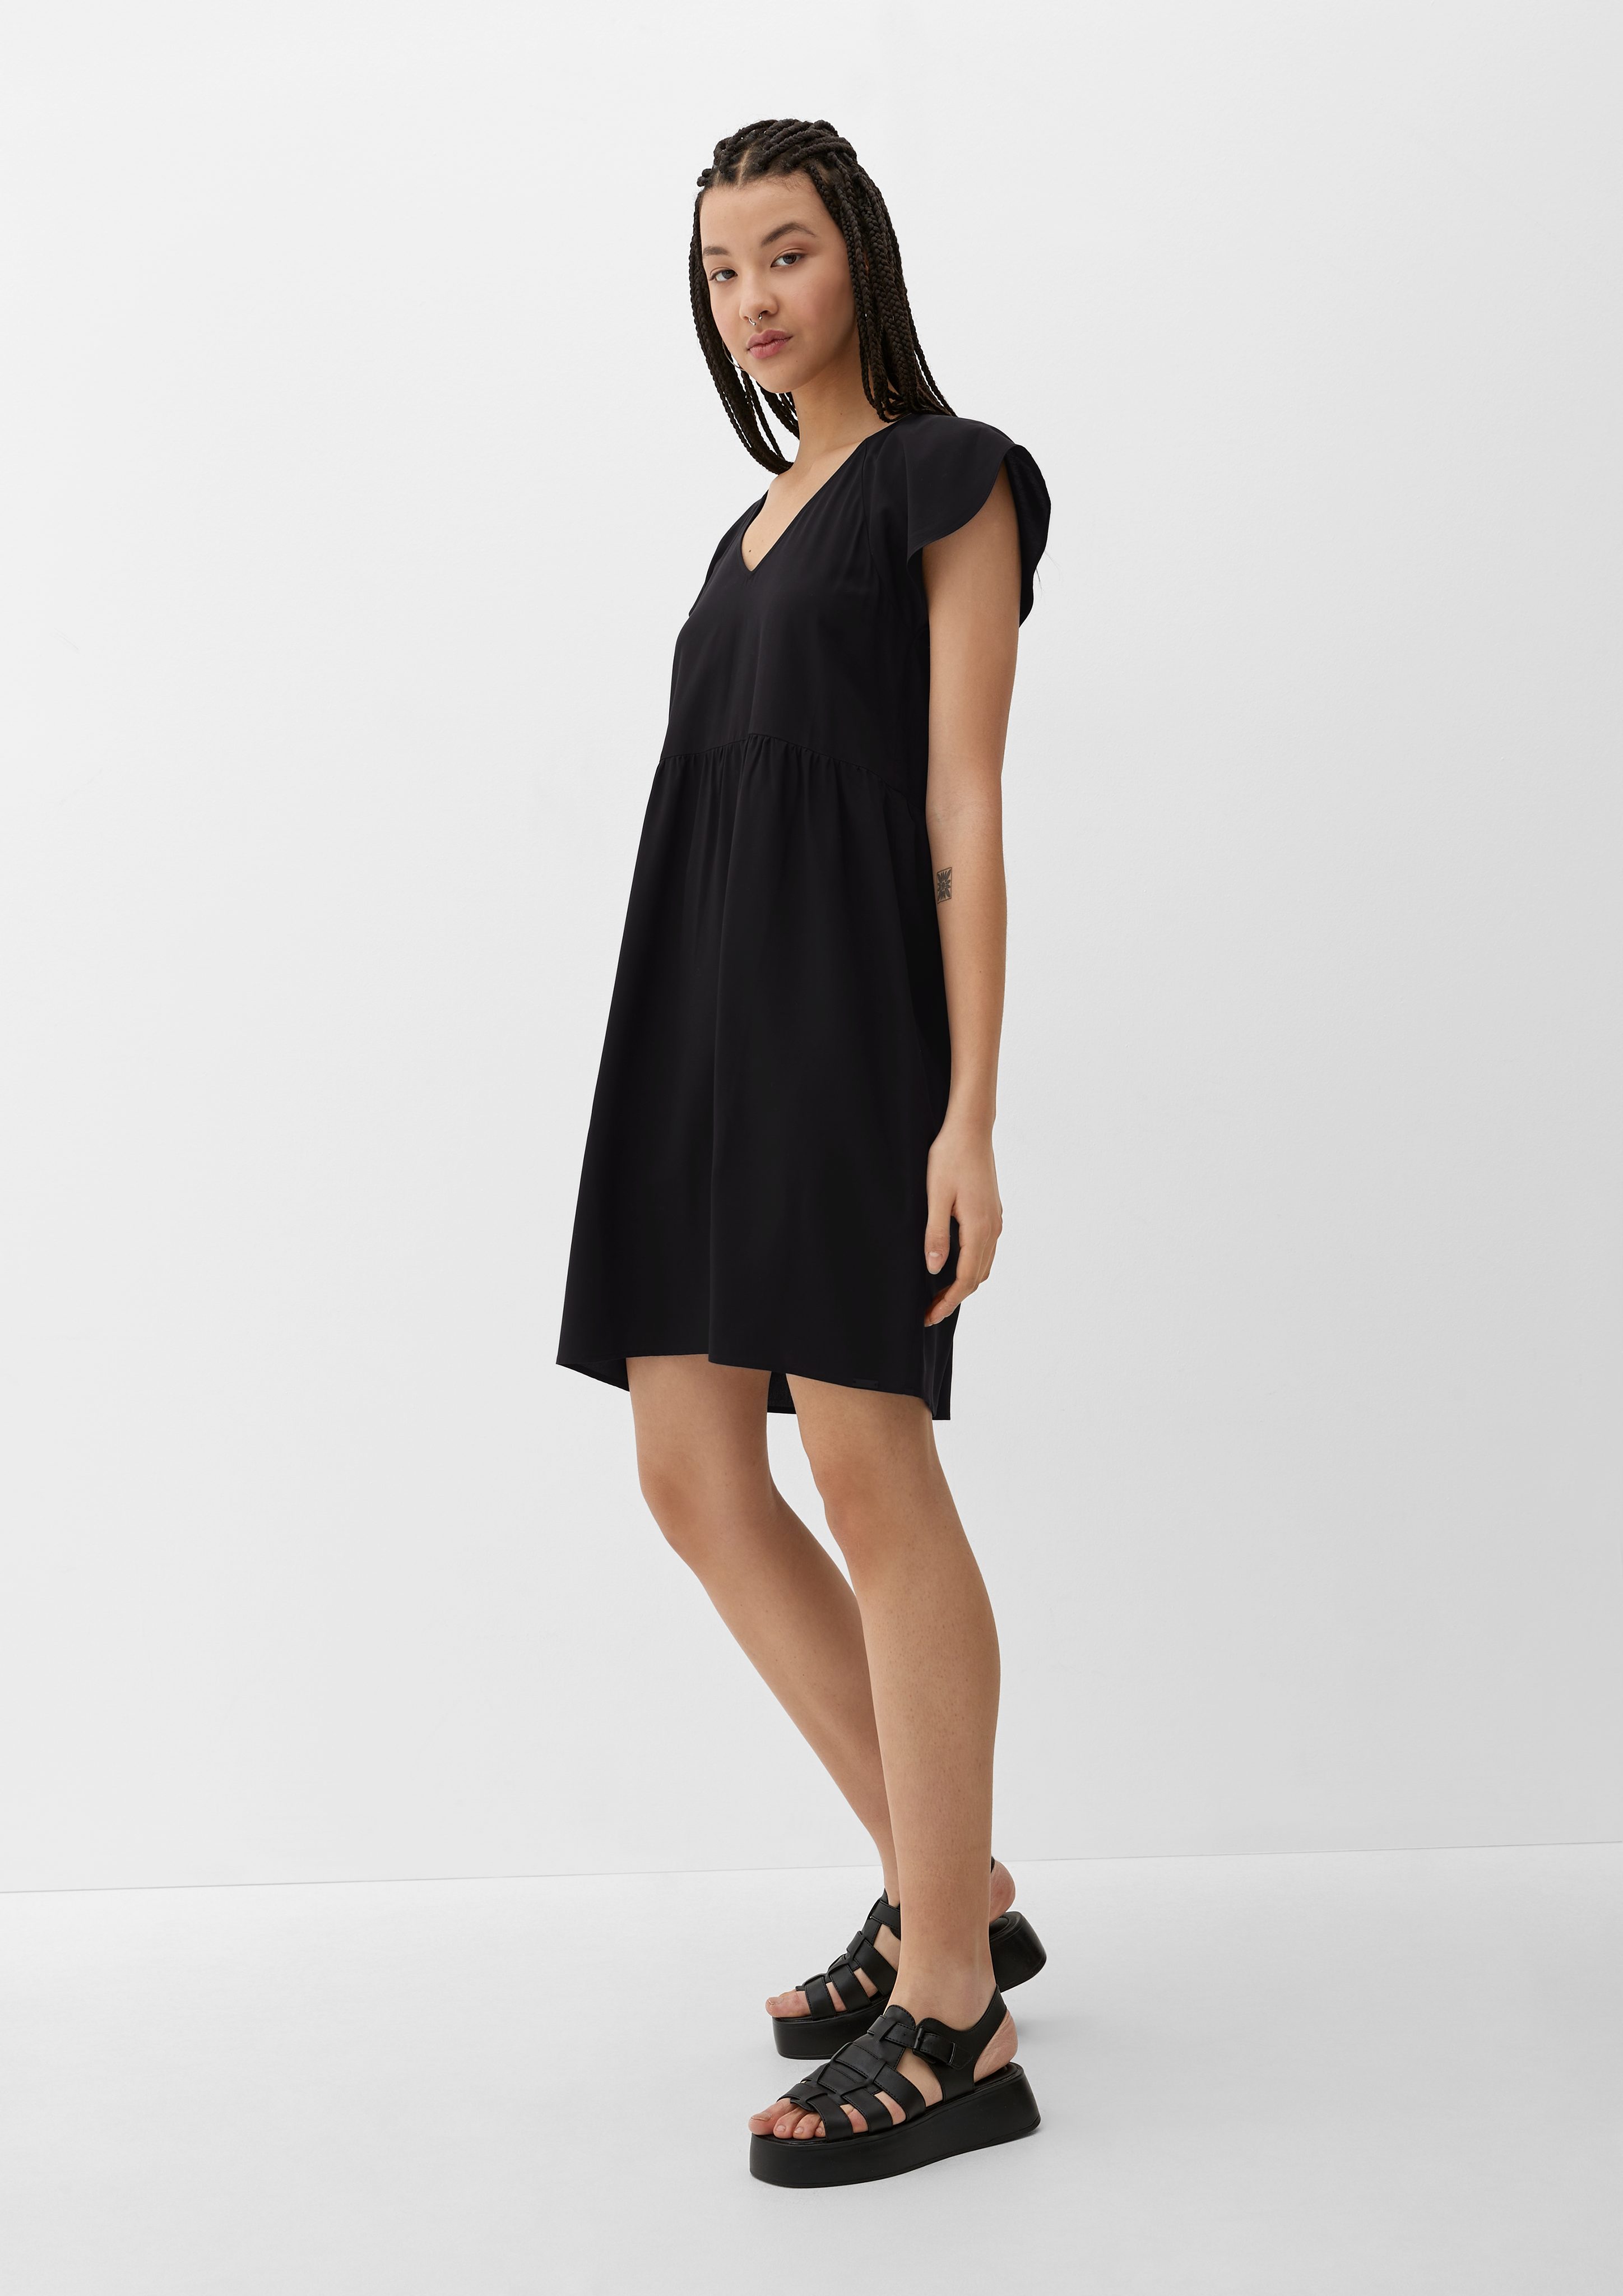 Kleid QS aus schwarz Kurzes Raffung Minikleid Viskose